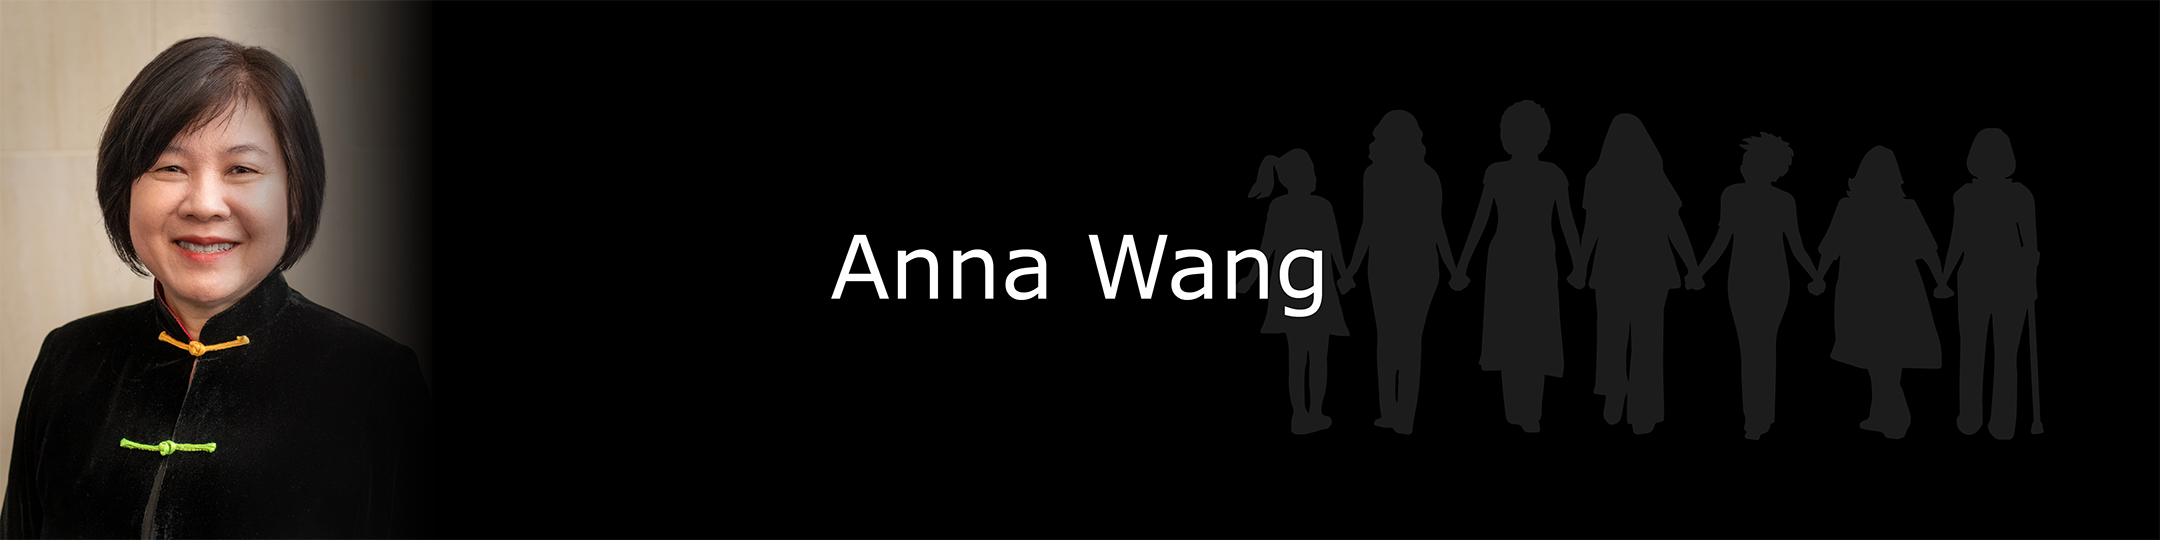 Photo of Anna Wang.